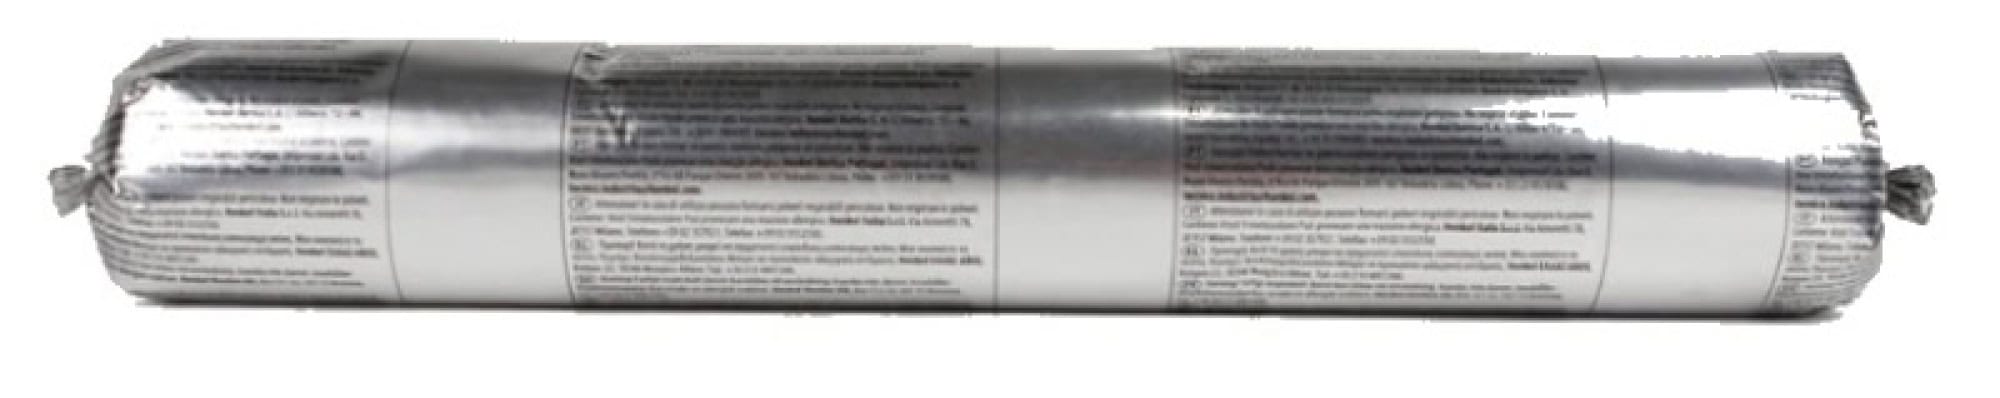 Henkel™ Teroson® Silanmodifizierter Polymer Kleb-/Dichtstoff MS 930, 570 ml Folienbeutel, Grau, Thixotrop, 1K, 2496672, Für Universelle Anwendungen